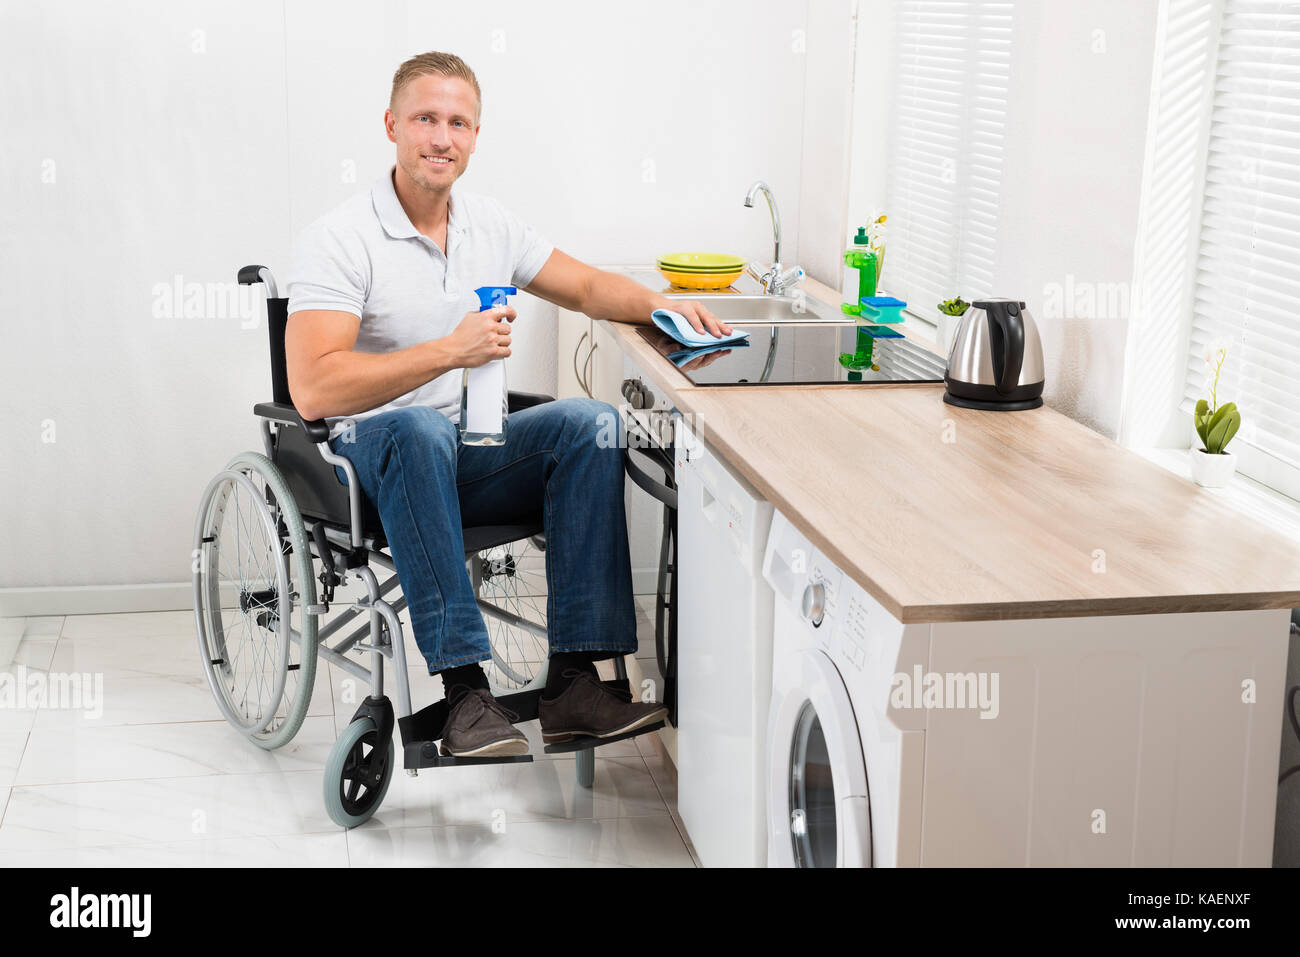 Junge glücklich Mann auf Rollstuhl Reinigung Induktion Herd in der Küche Zimmer Stockfoto